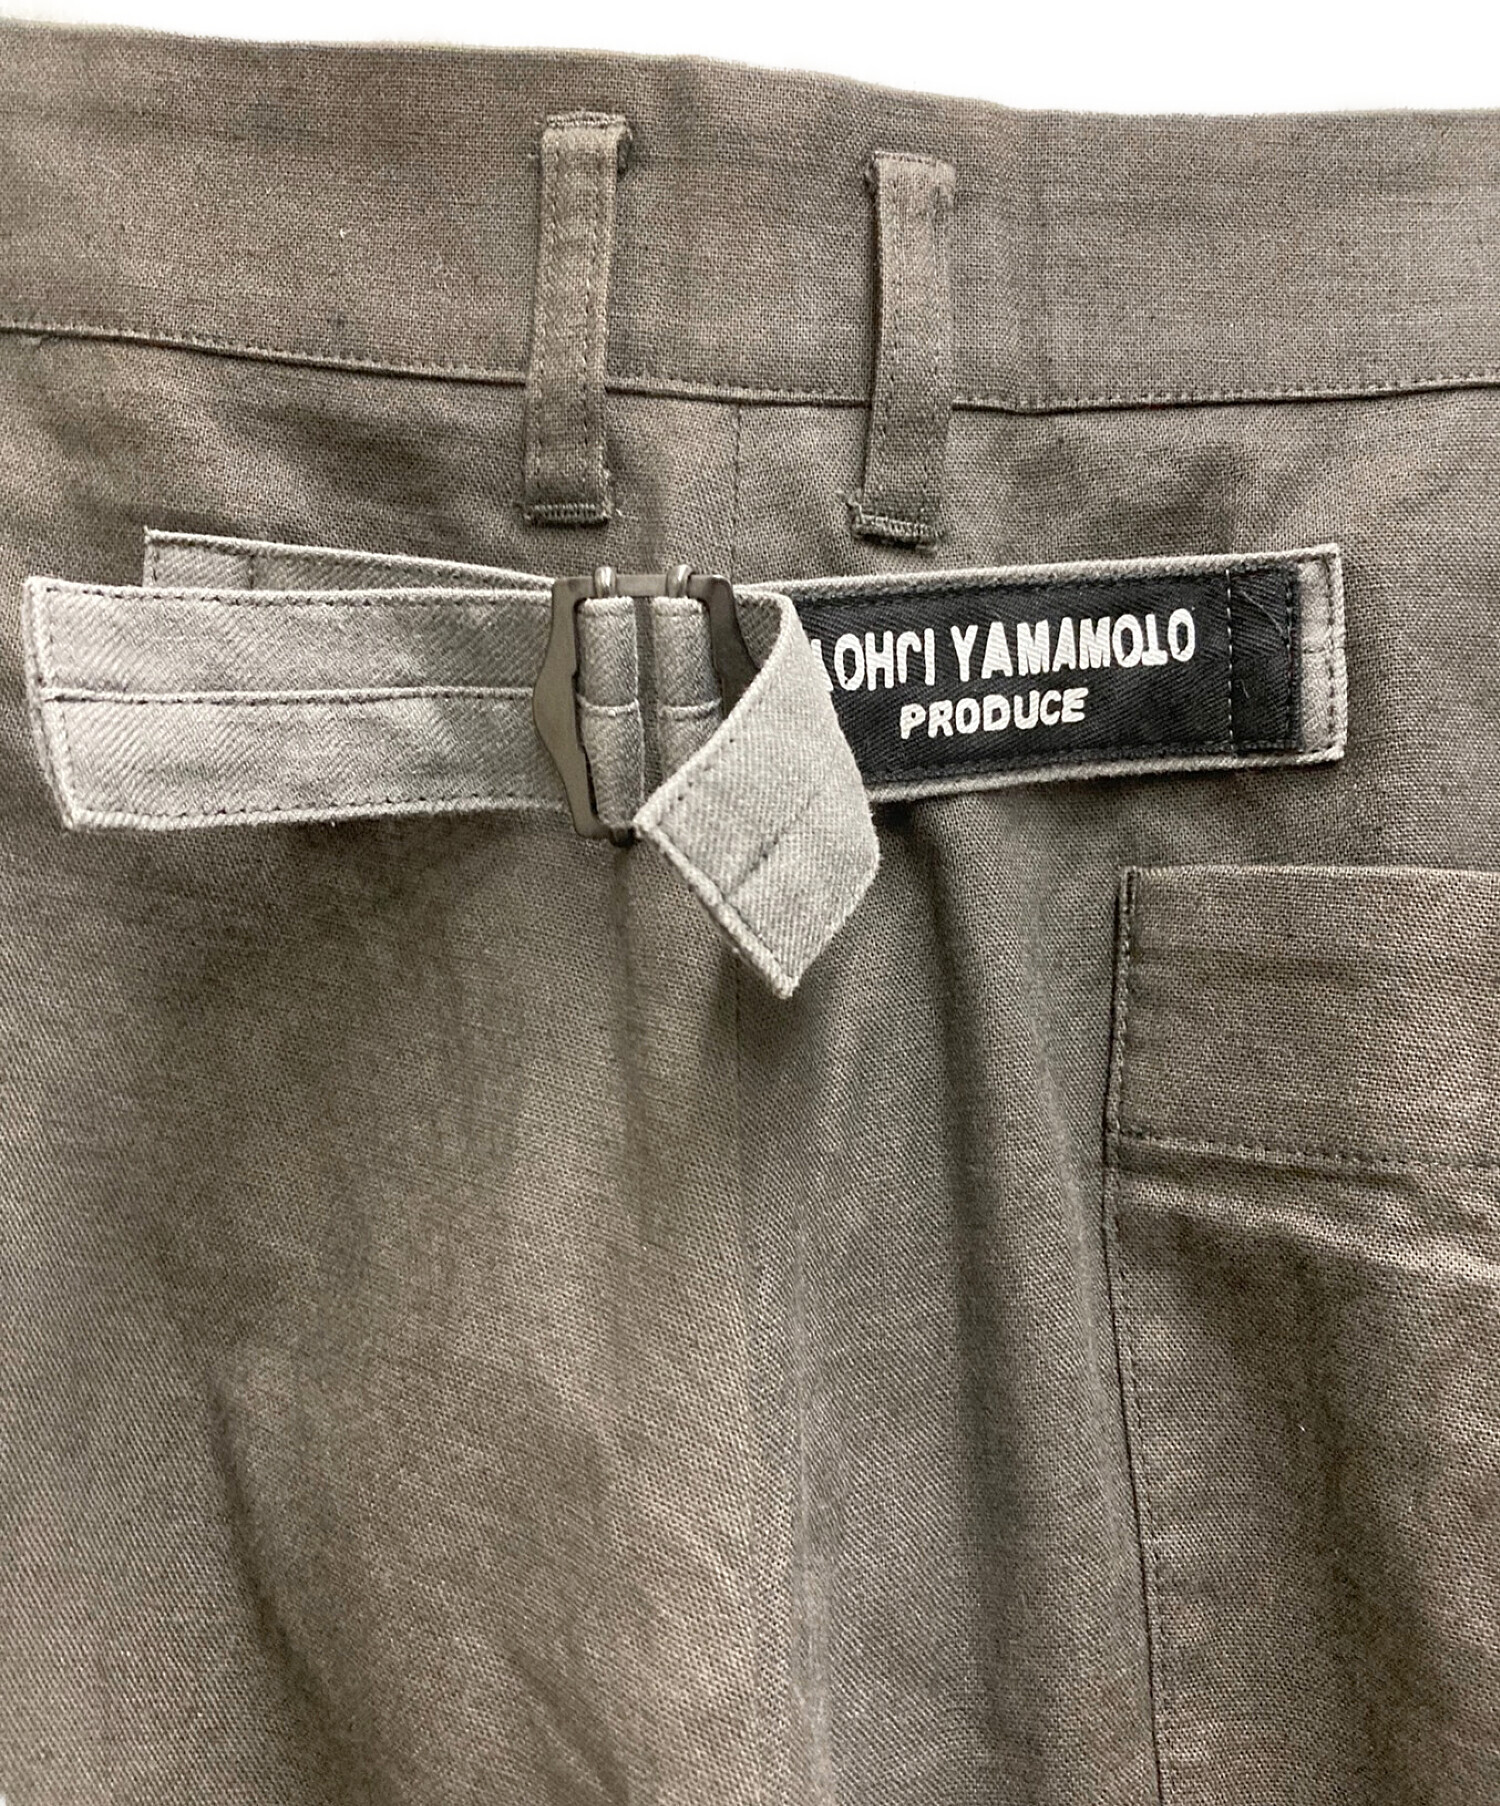 Yohji Yamamoto pour homme (ヨウジヤマモト プールオム) 右前リネン布付きコットンワイドパンツ グレー サイズ:4